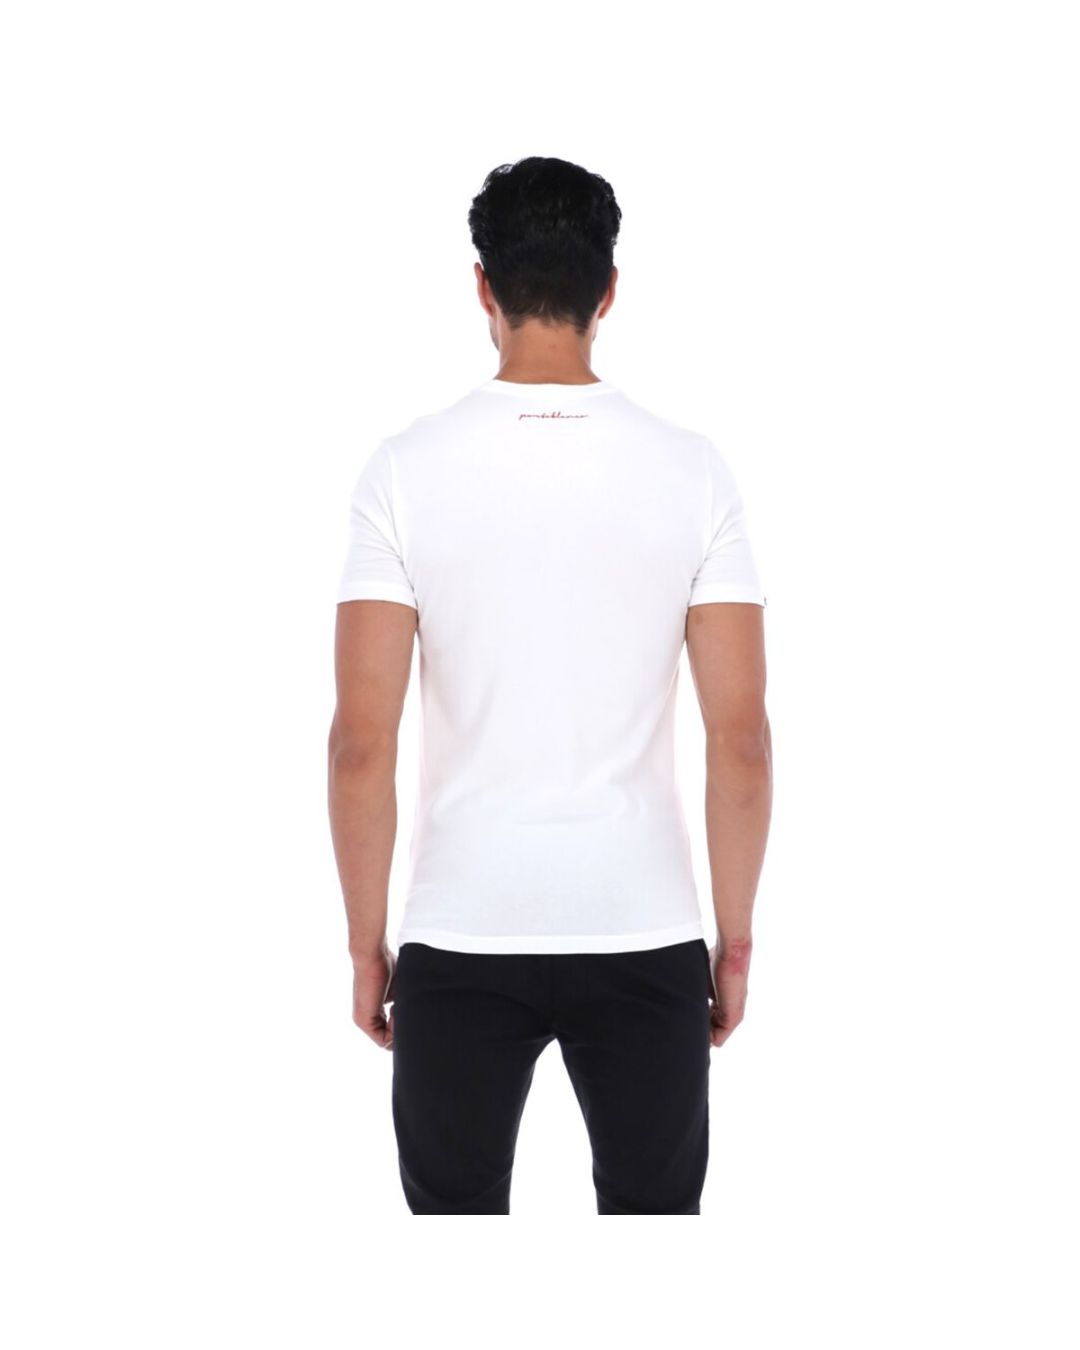 Men's Print Short Sleeve Crew Neck T-Shirt White Red & Black